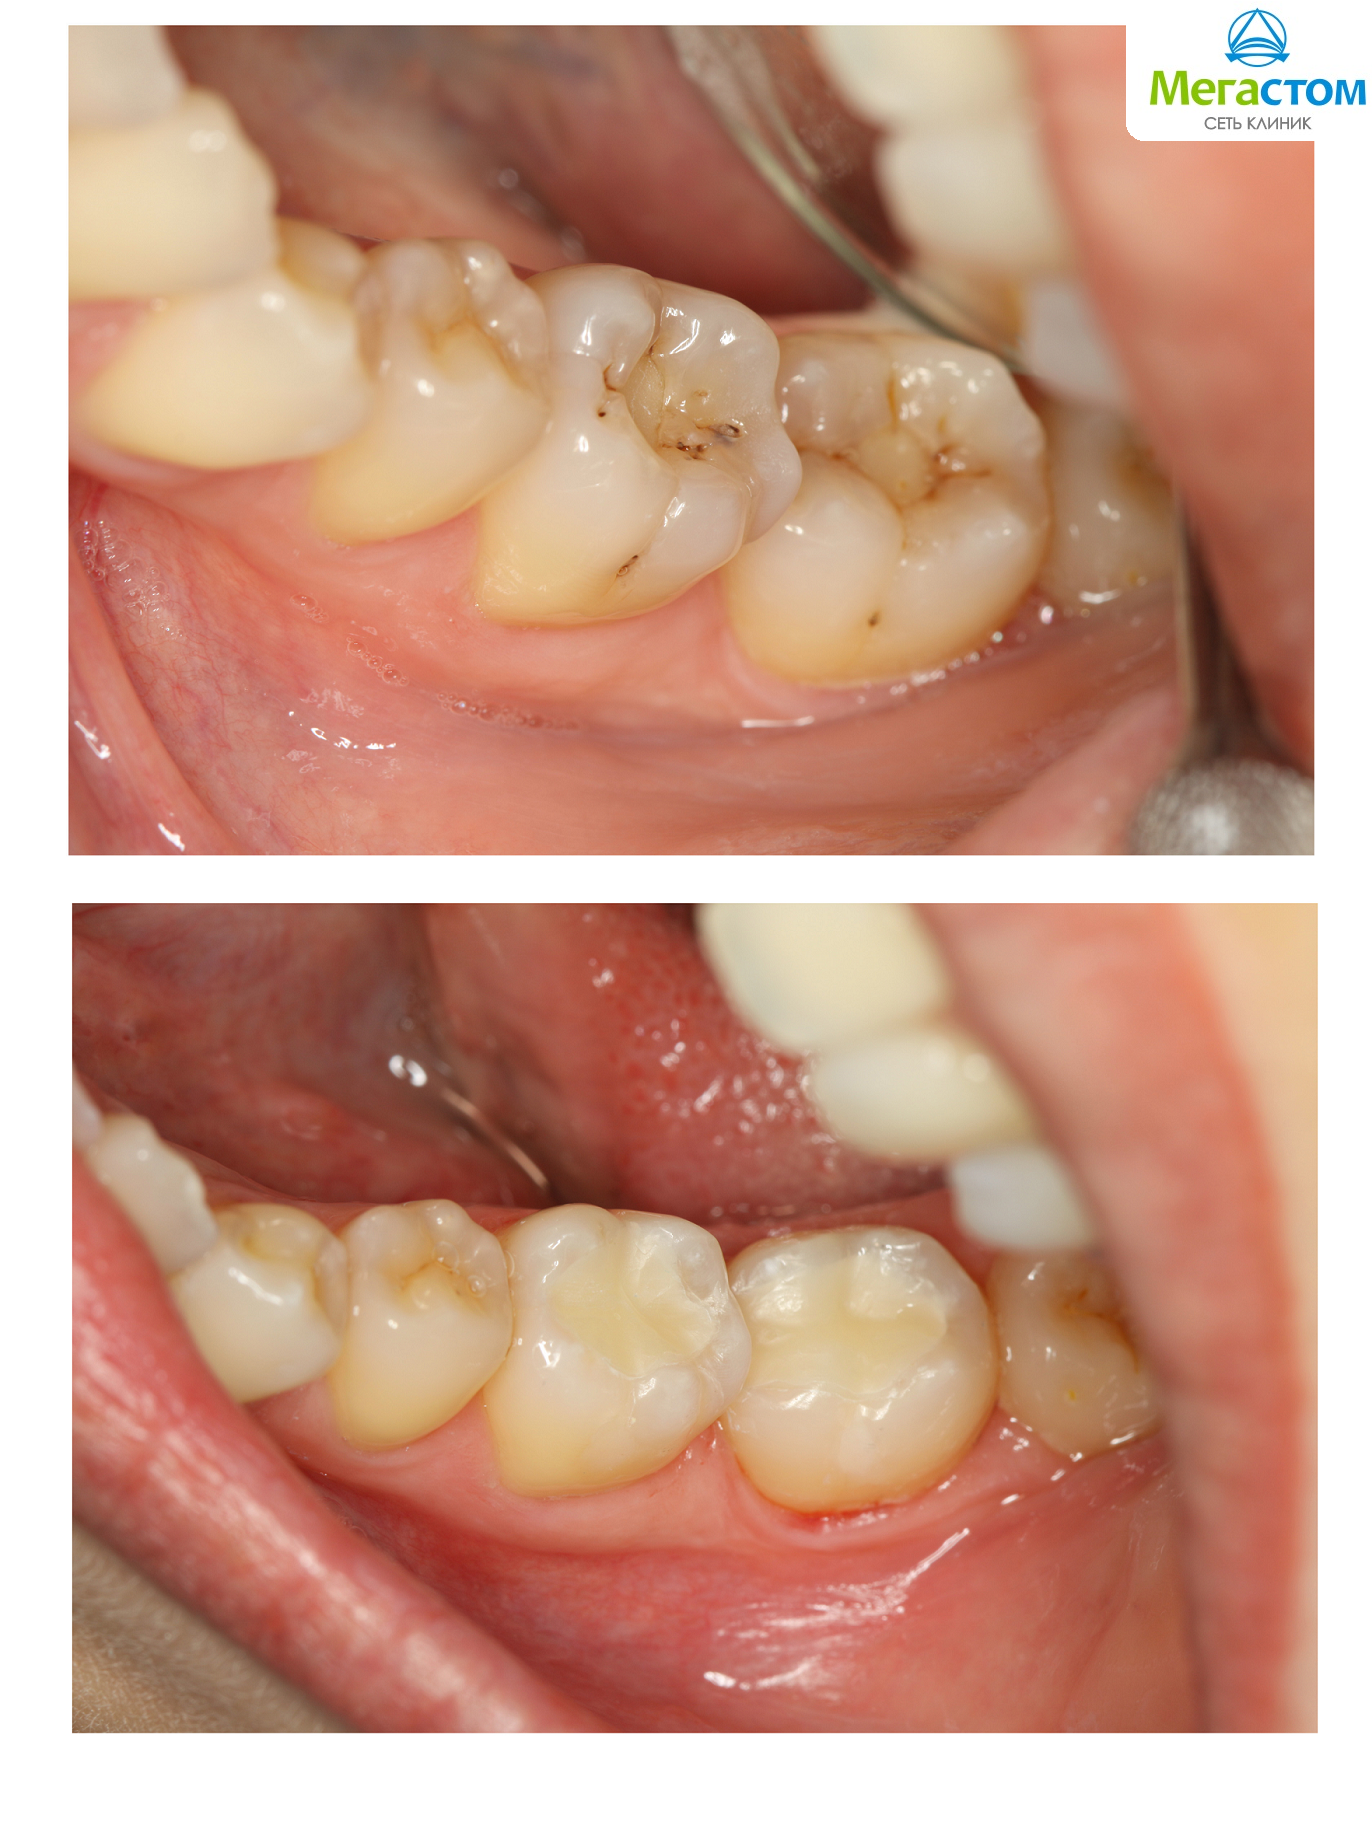 До и после пломбирования зубов